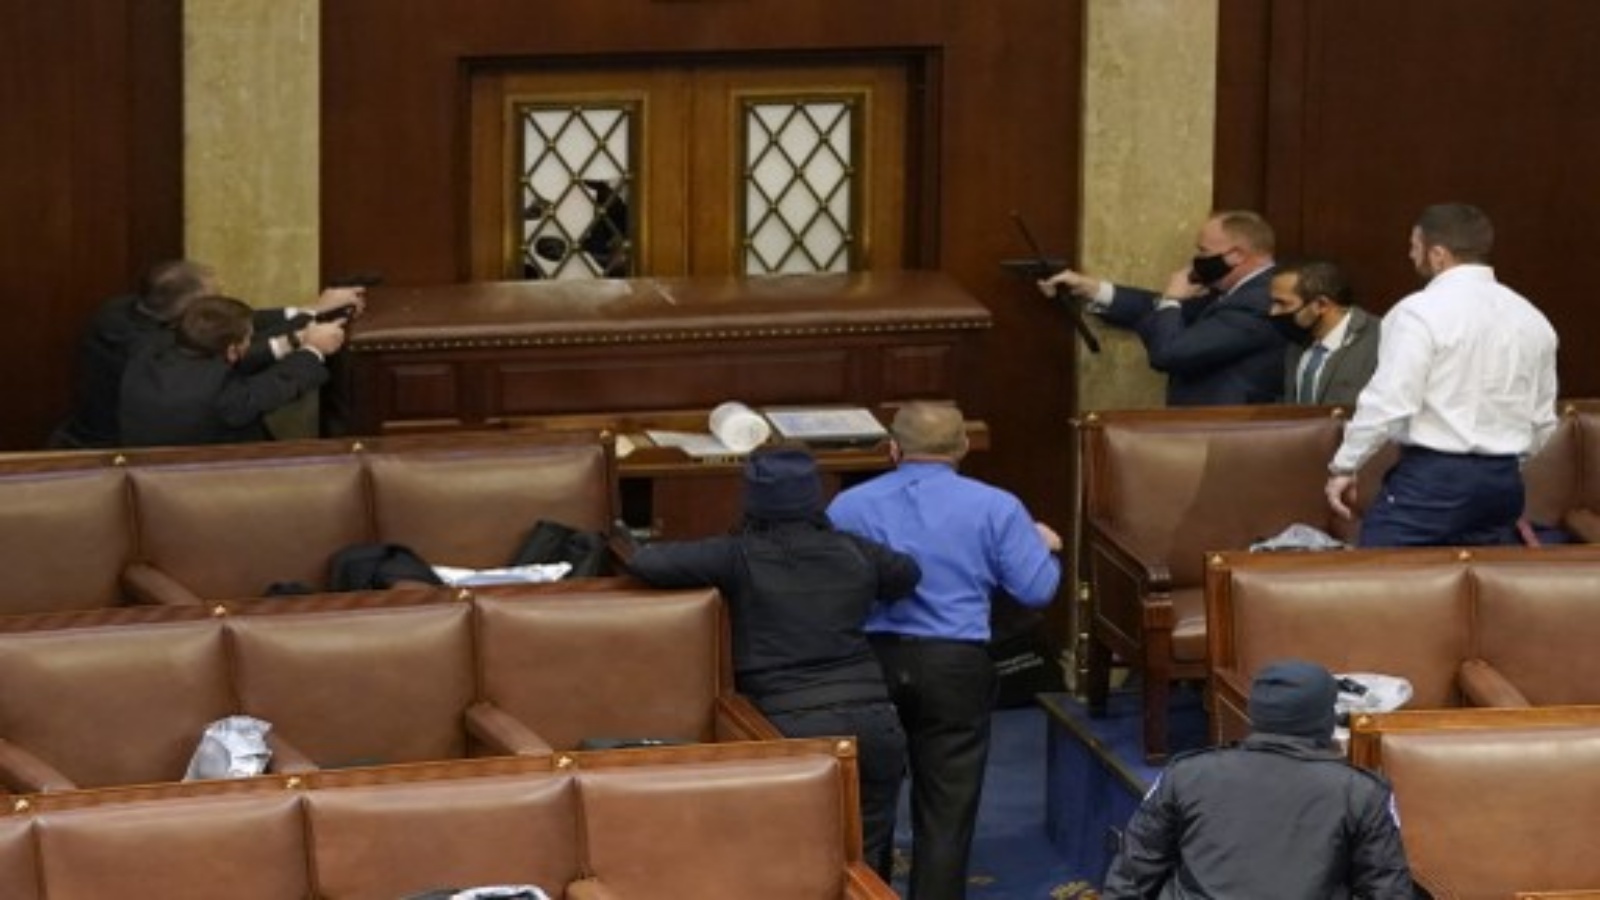 ضباط شرطة الكابيتول يصوبون أسلحتهم على باب تعرض للتخريب في غرفة مجلس النواب خلال جلسة مشتركة للكونغرس في 6 يناير 2021 في واشنطن العاصمة